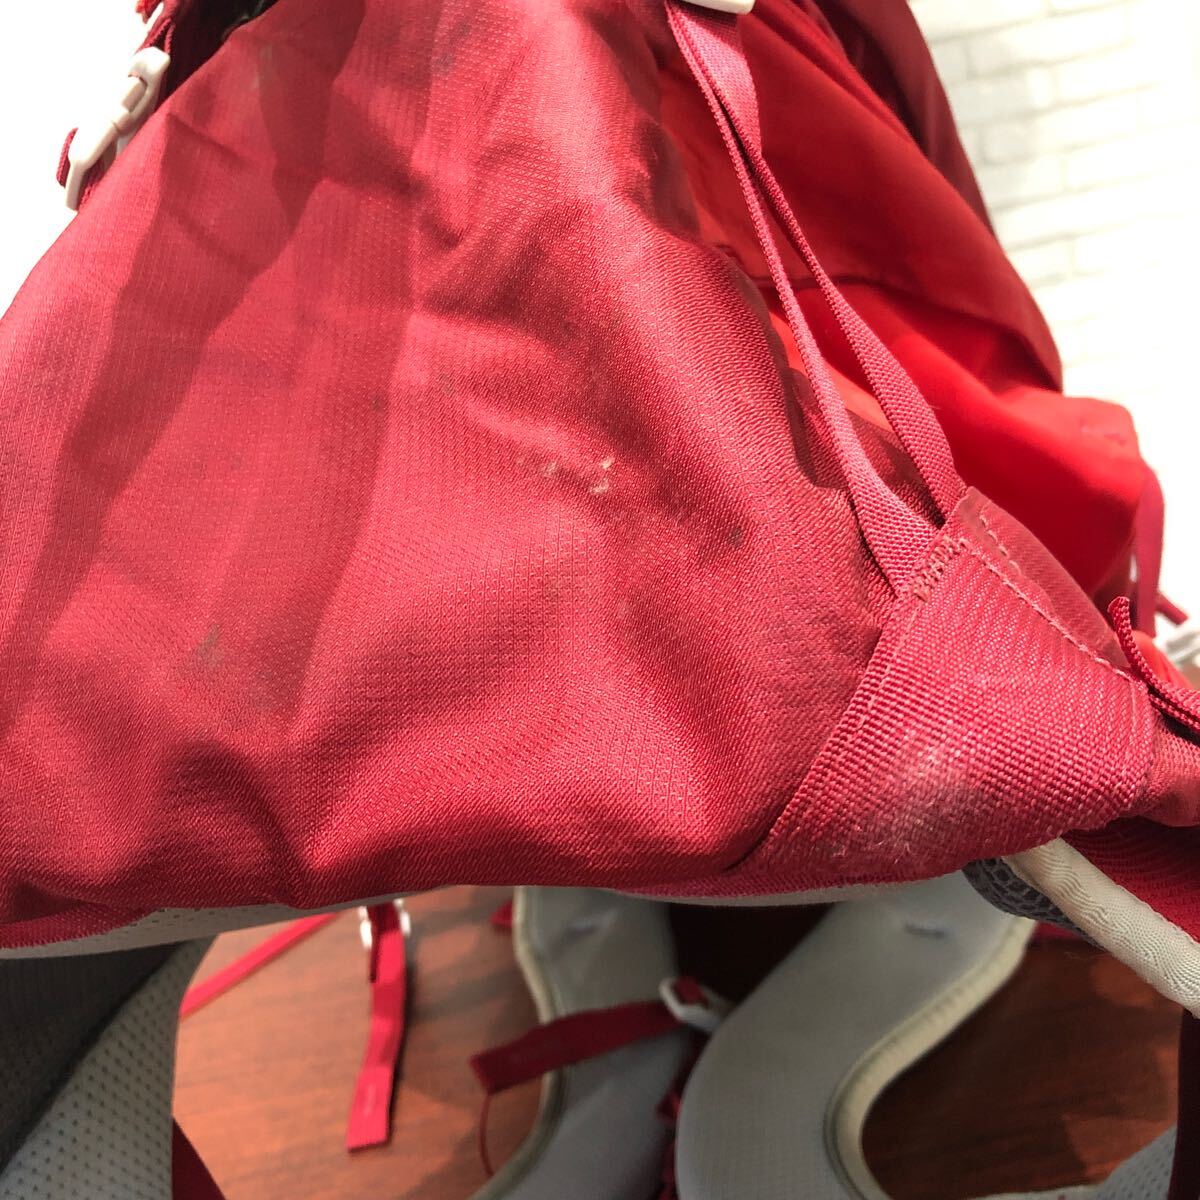 GREGORY Gregory рюкзак Z35 M красный рюкзак альпинизм уличный высокий King мужской женский сумка рюкзак 